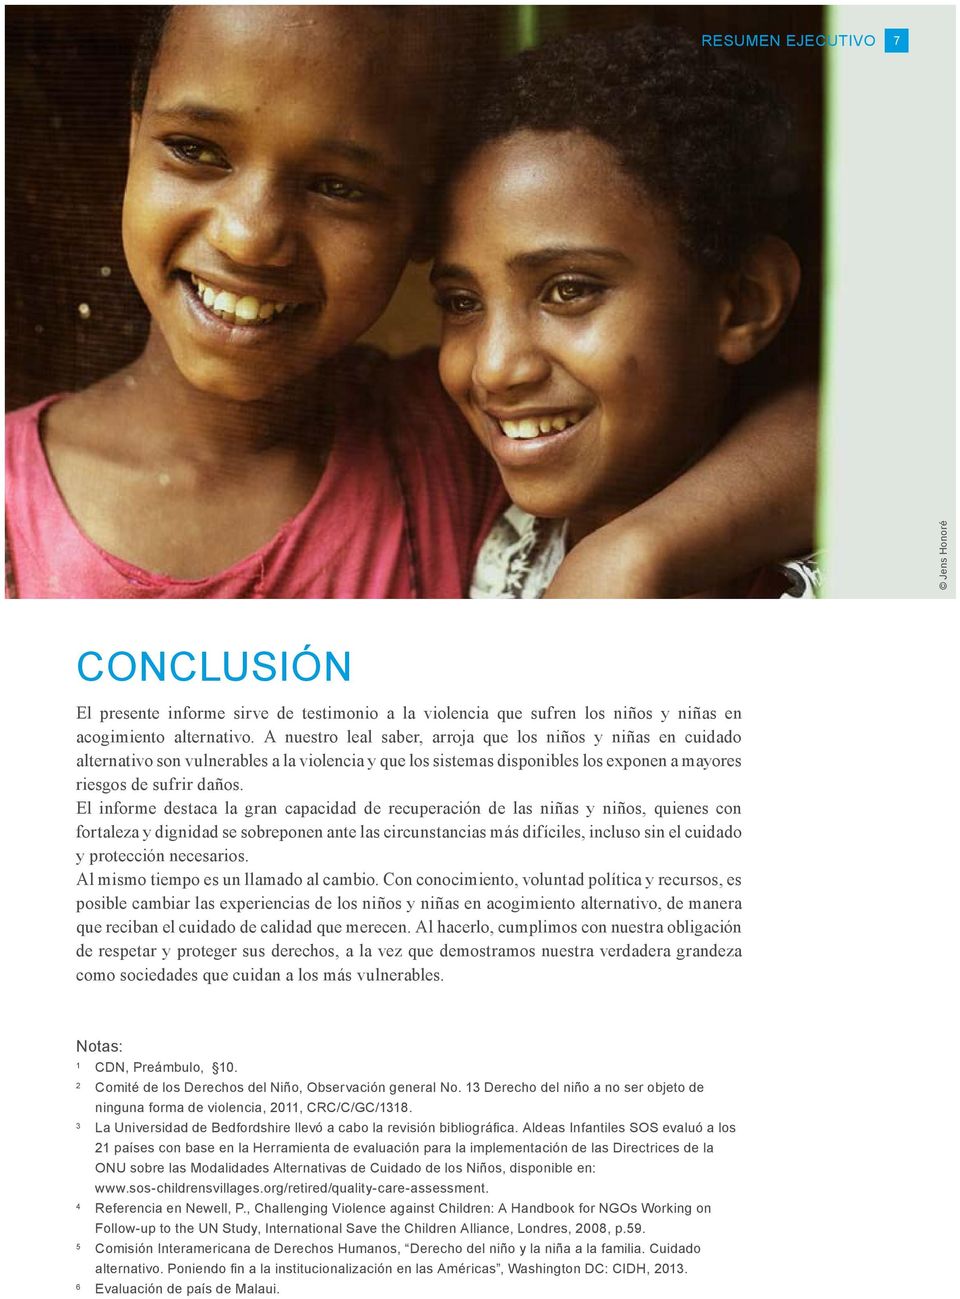 El informe destaca la gran capacidad de recuperación de las niñas y niños, quienes con fortaleza y dignidad se sobreponen ante las circunstancias más difíciles, incluso sin el cuidado y protección